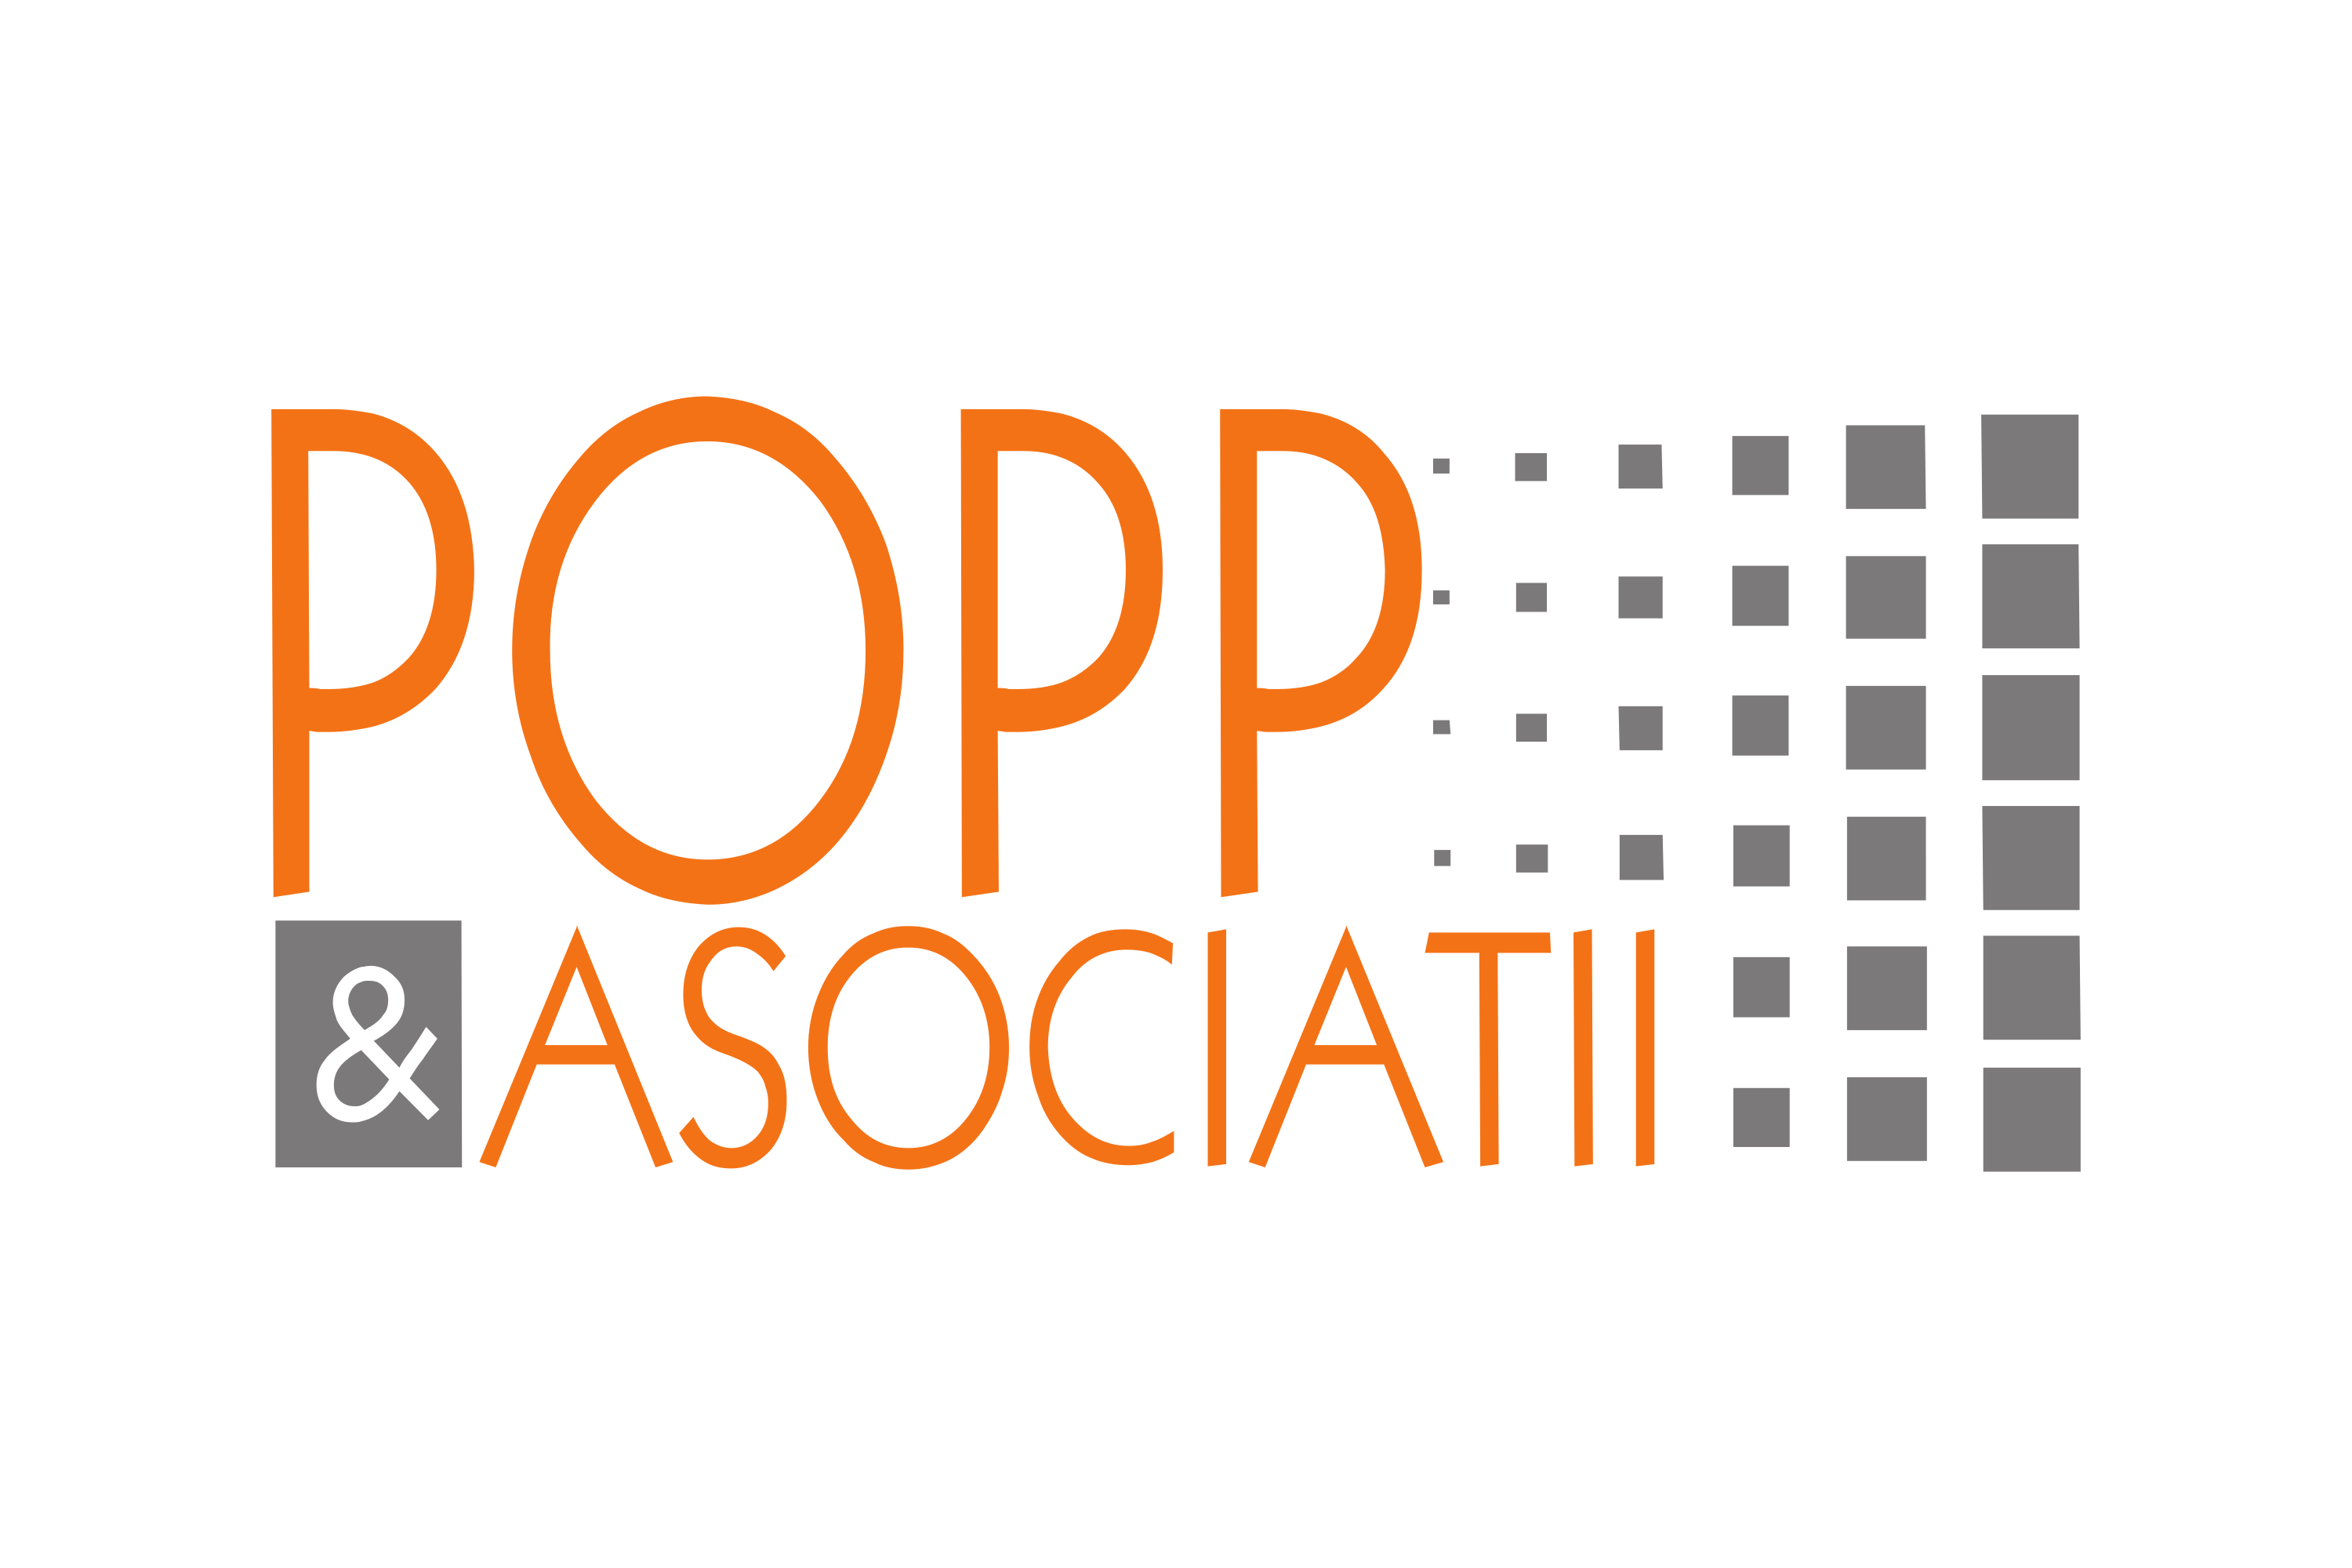 Popp & Asociatii Logo